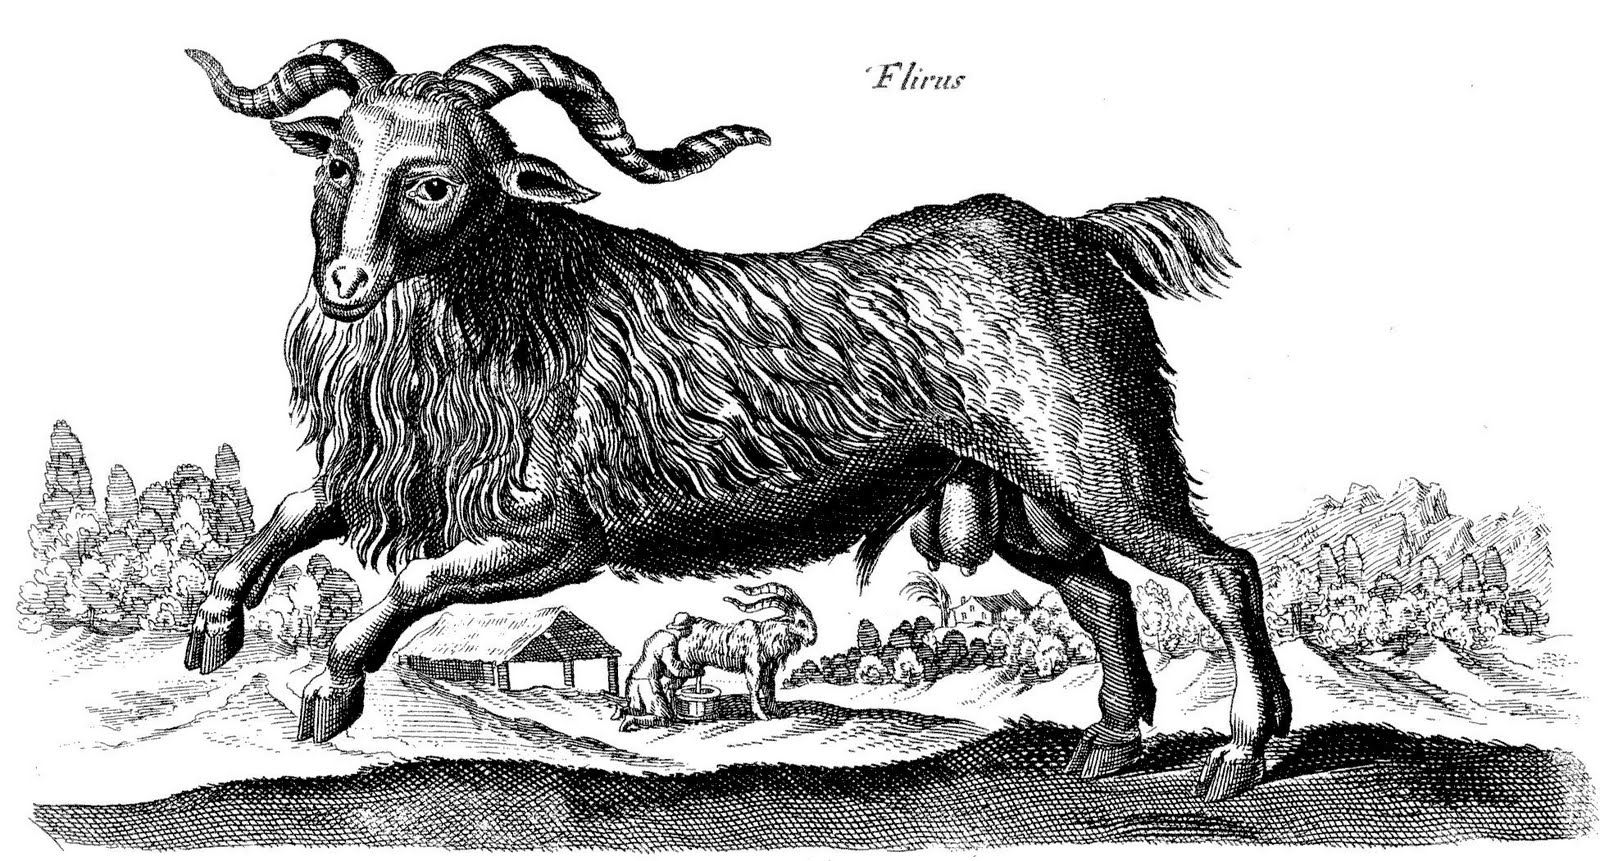 Goat elizabeth bentley